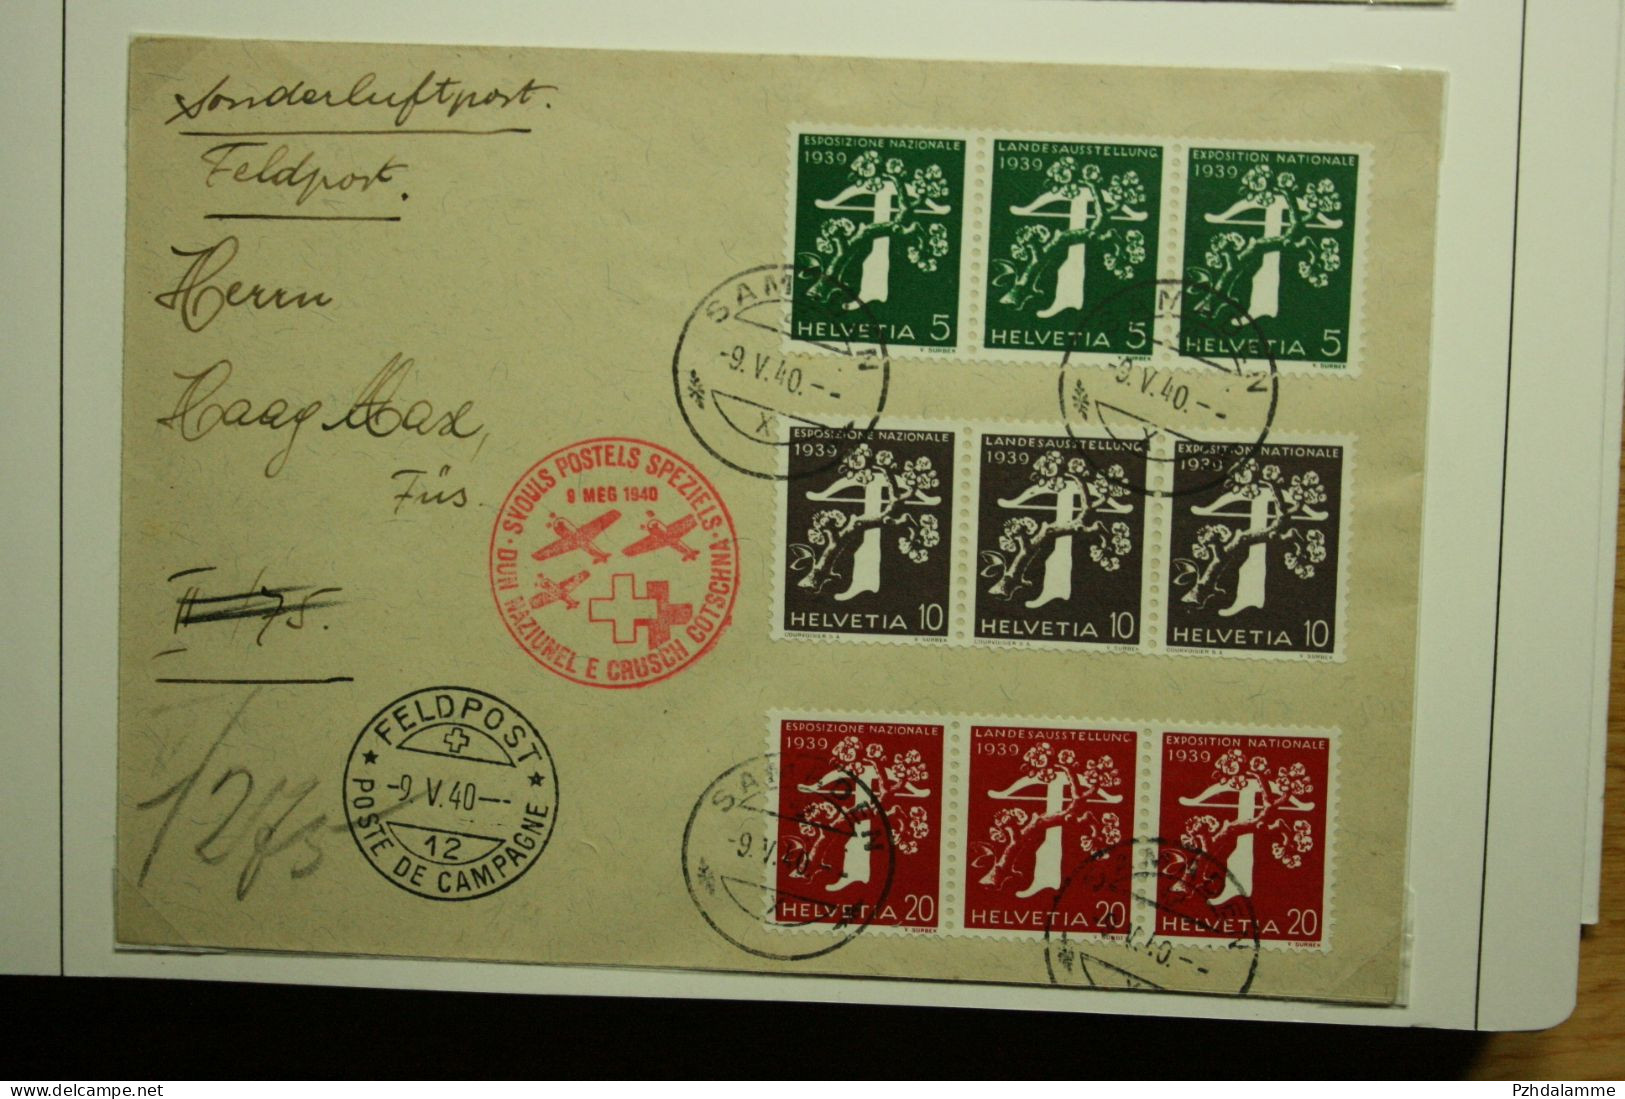 Schweiz 1939 Landesausstellung in vielen Kombinationen mit Briefe